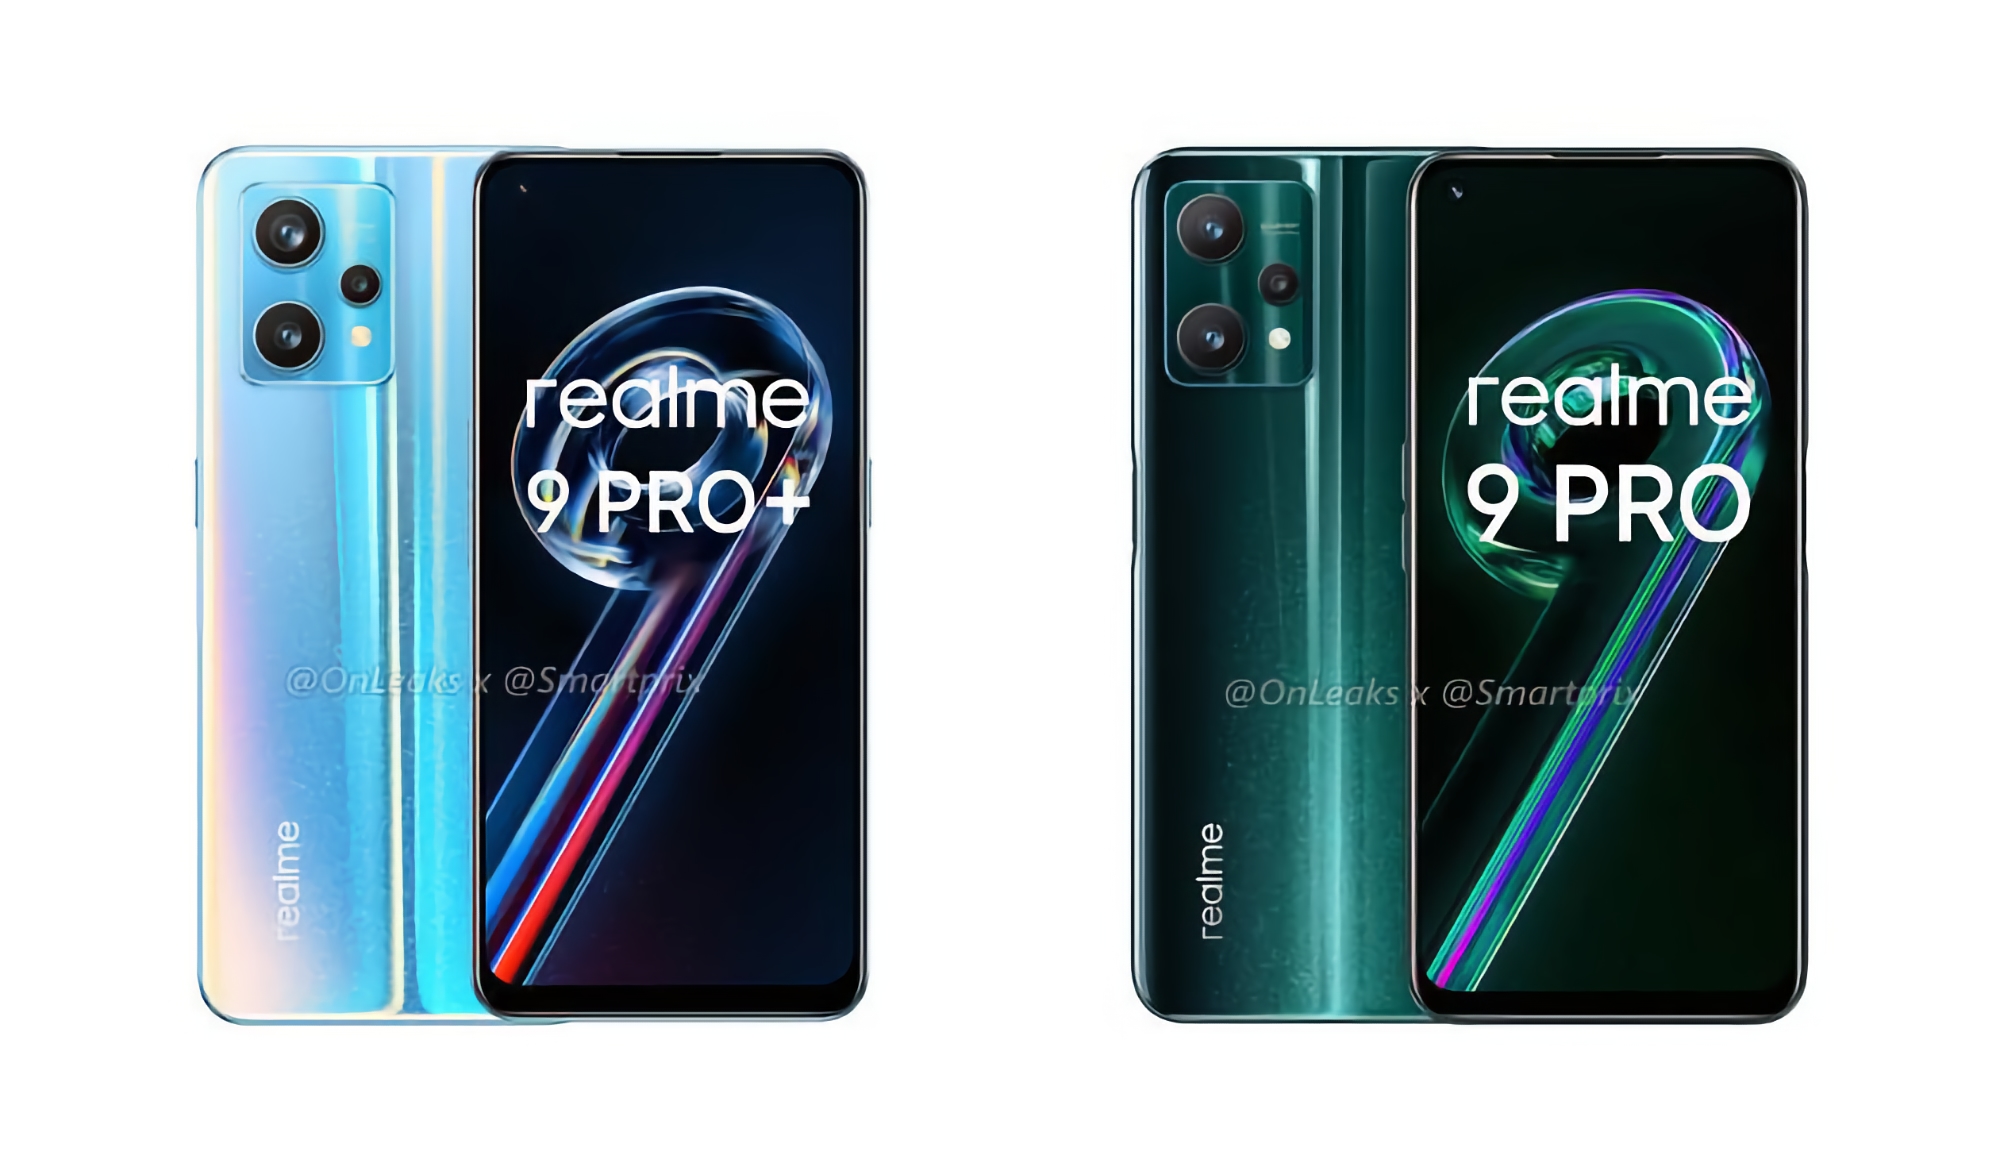 Confirmado: realme 9 Pro y realme 9 Pro+ se lanzarán en Europa el 15 de febrero